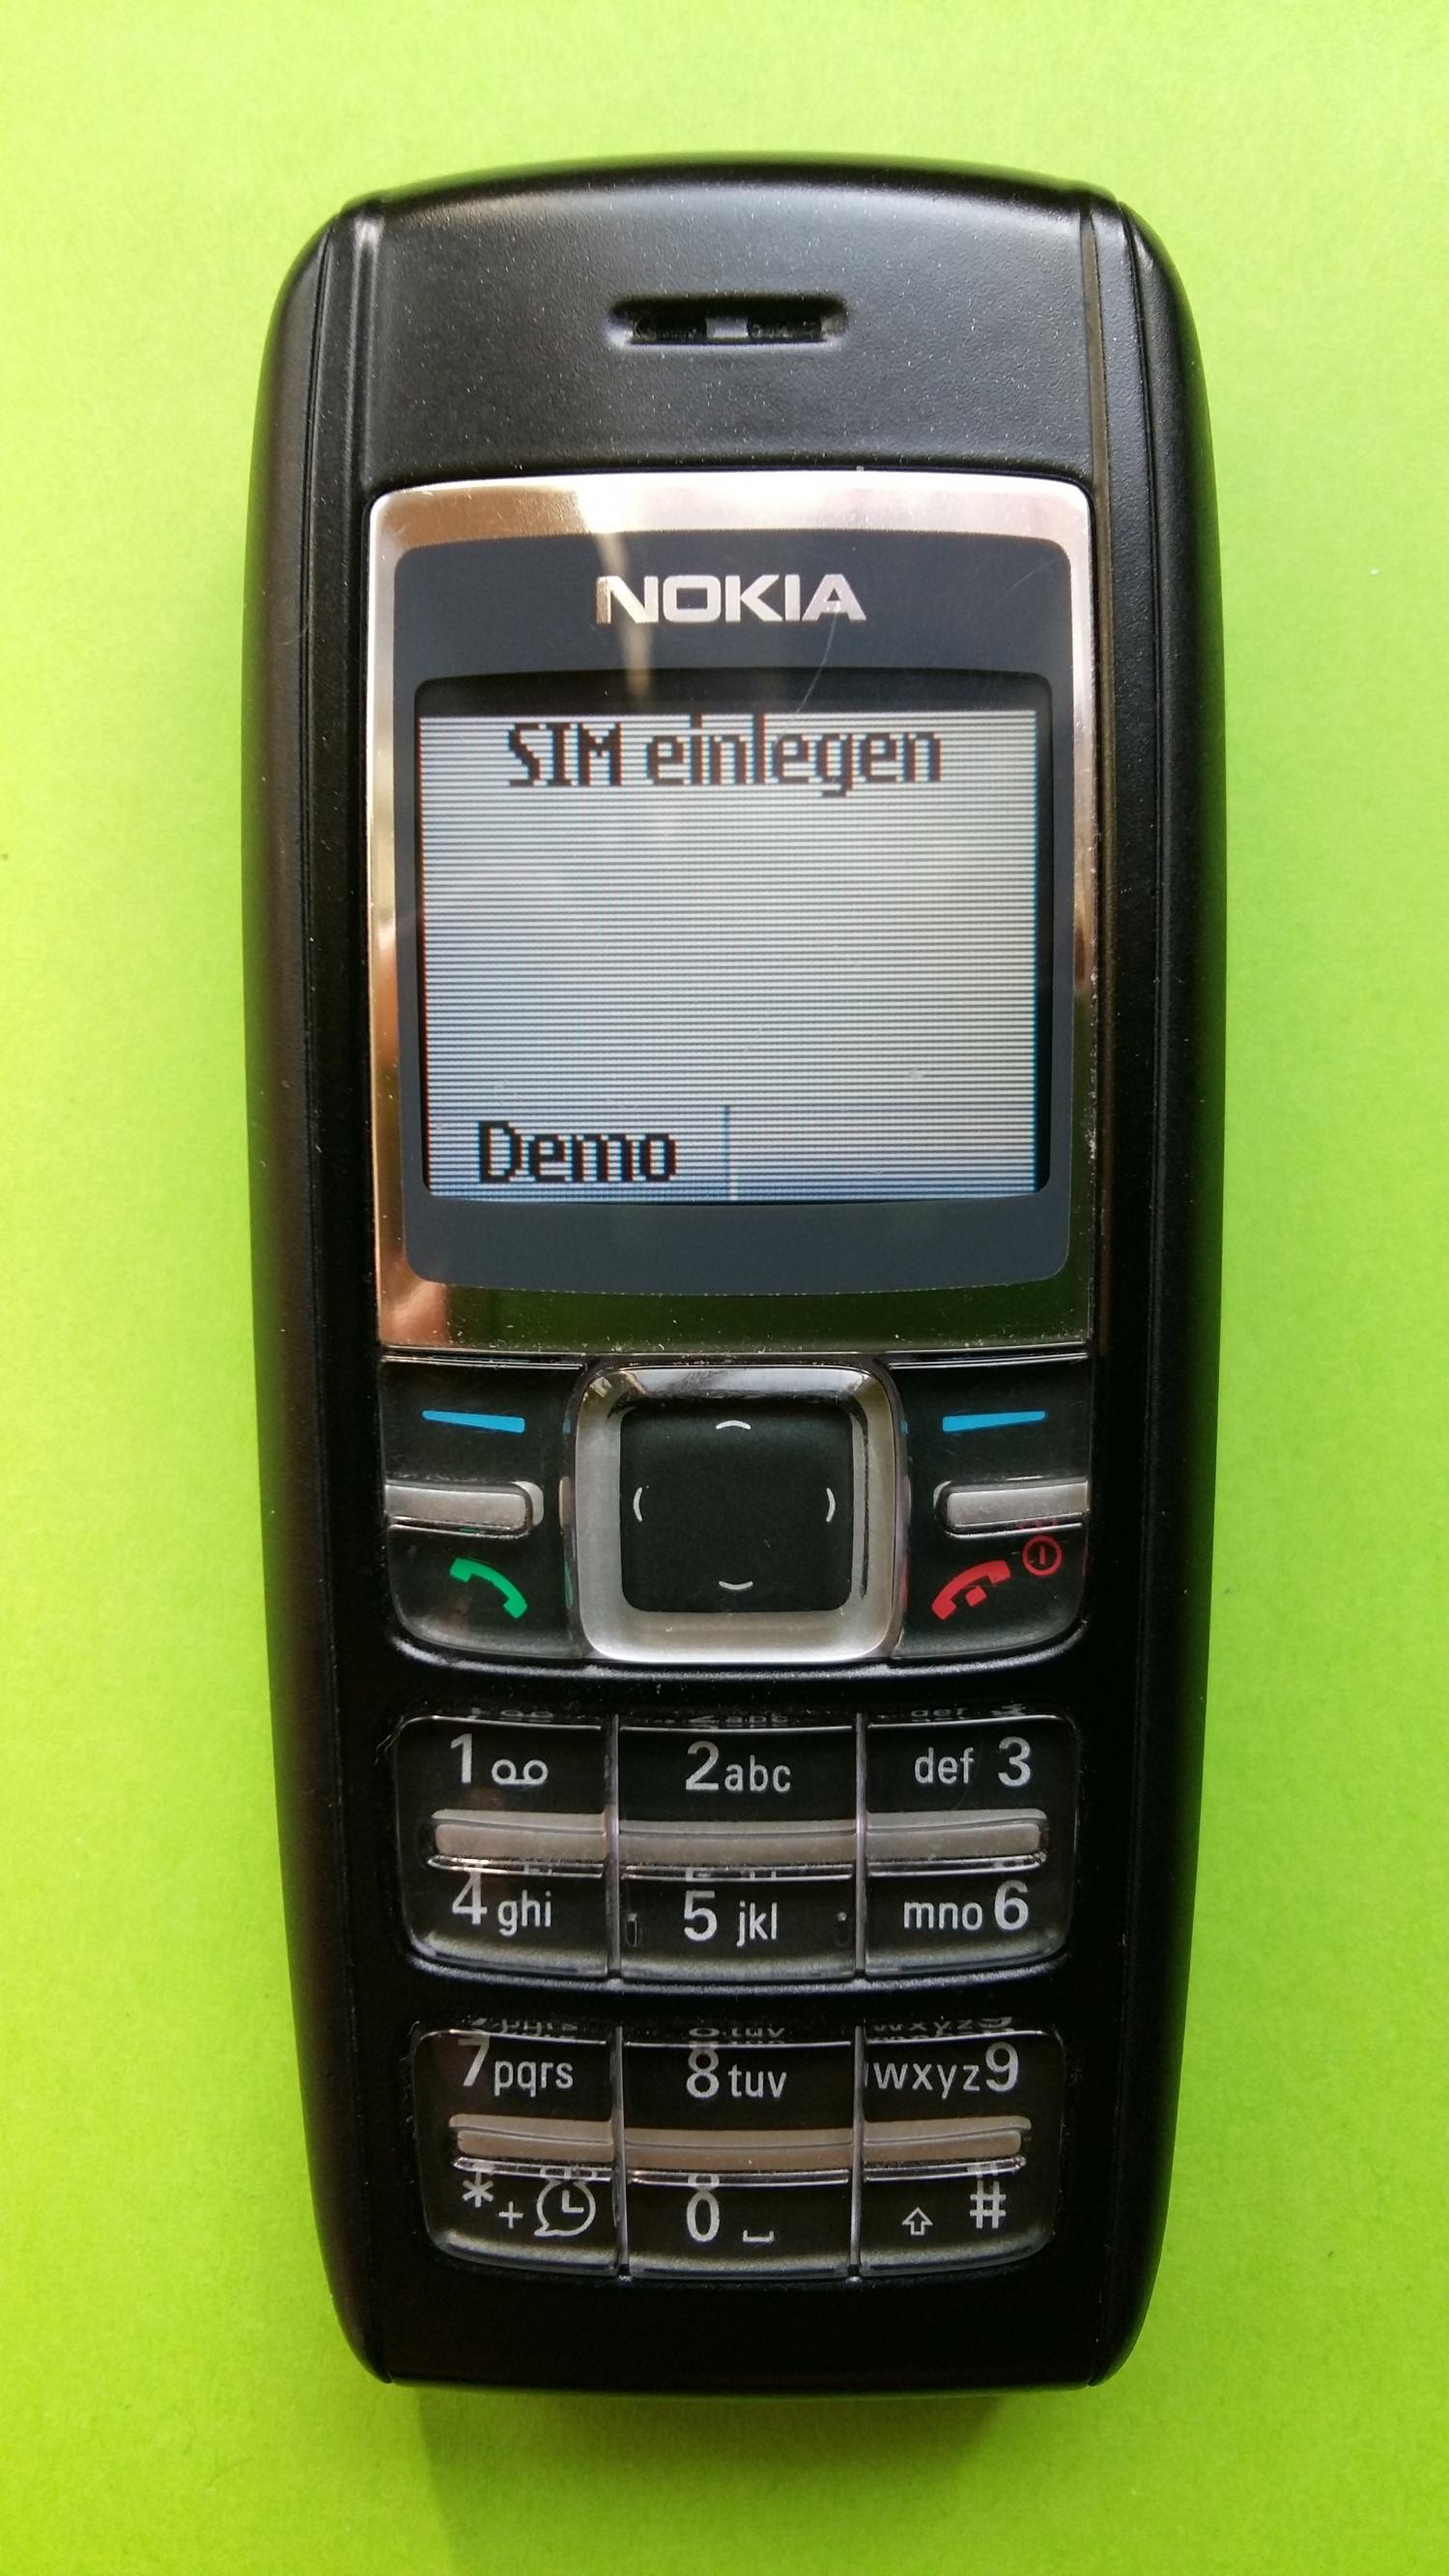 image-7300728-Nokia 1600 (8)1.jpg